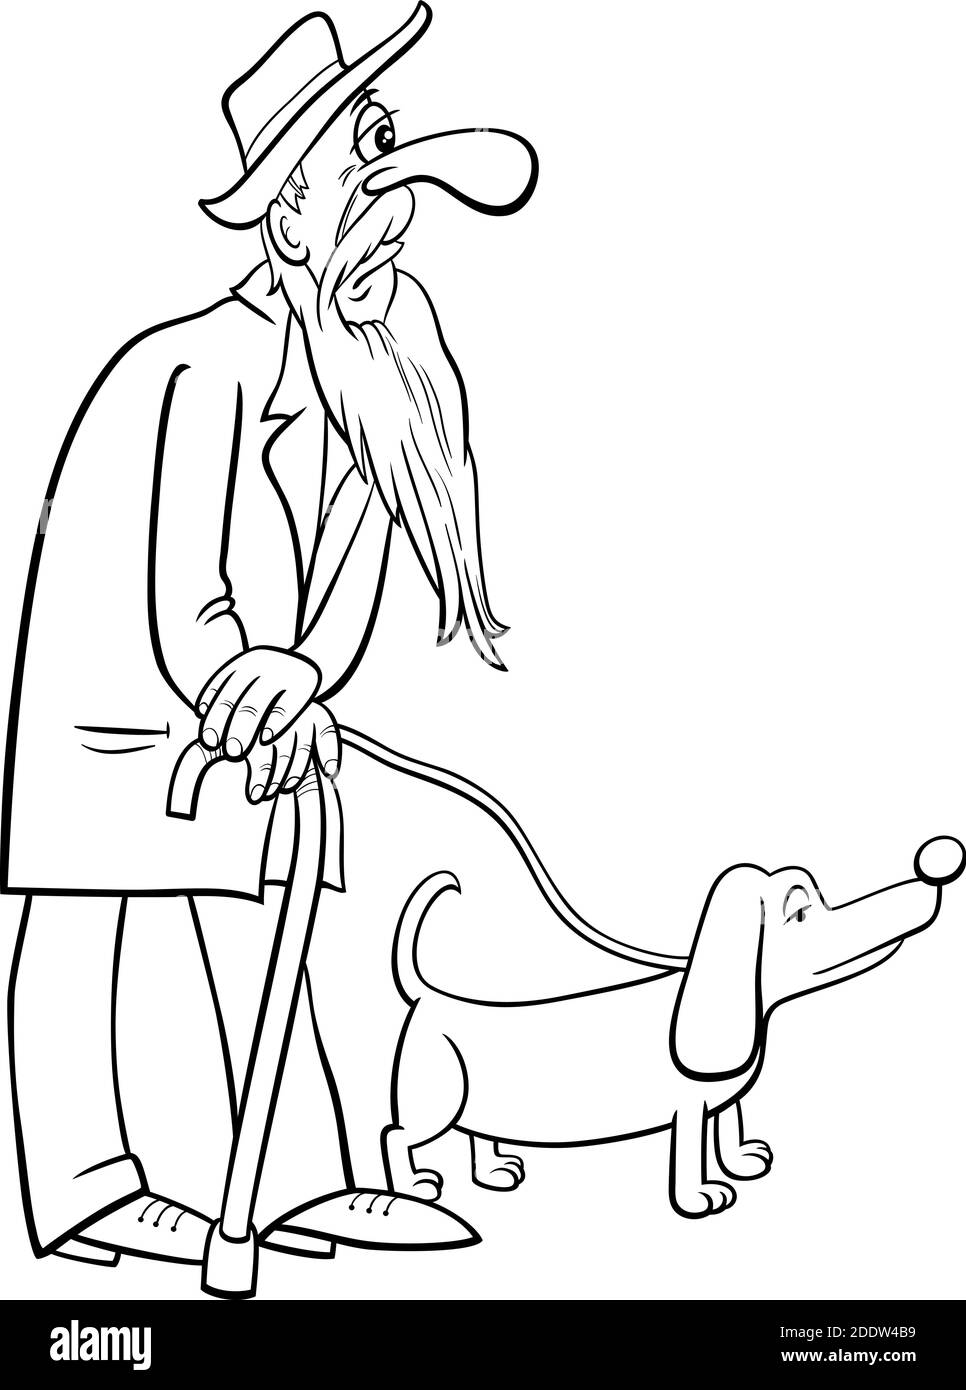 Dessin en noir et blanc représentant un homme âgé d'âge mûr ou grand-père marchant avec page de livre de coloriage de chien Illustration de Vecteur